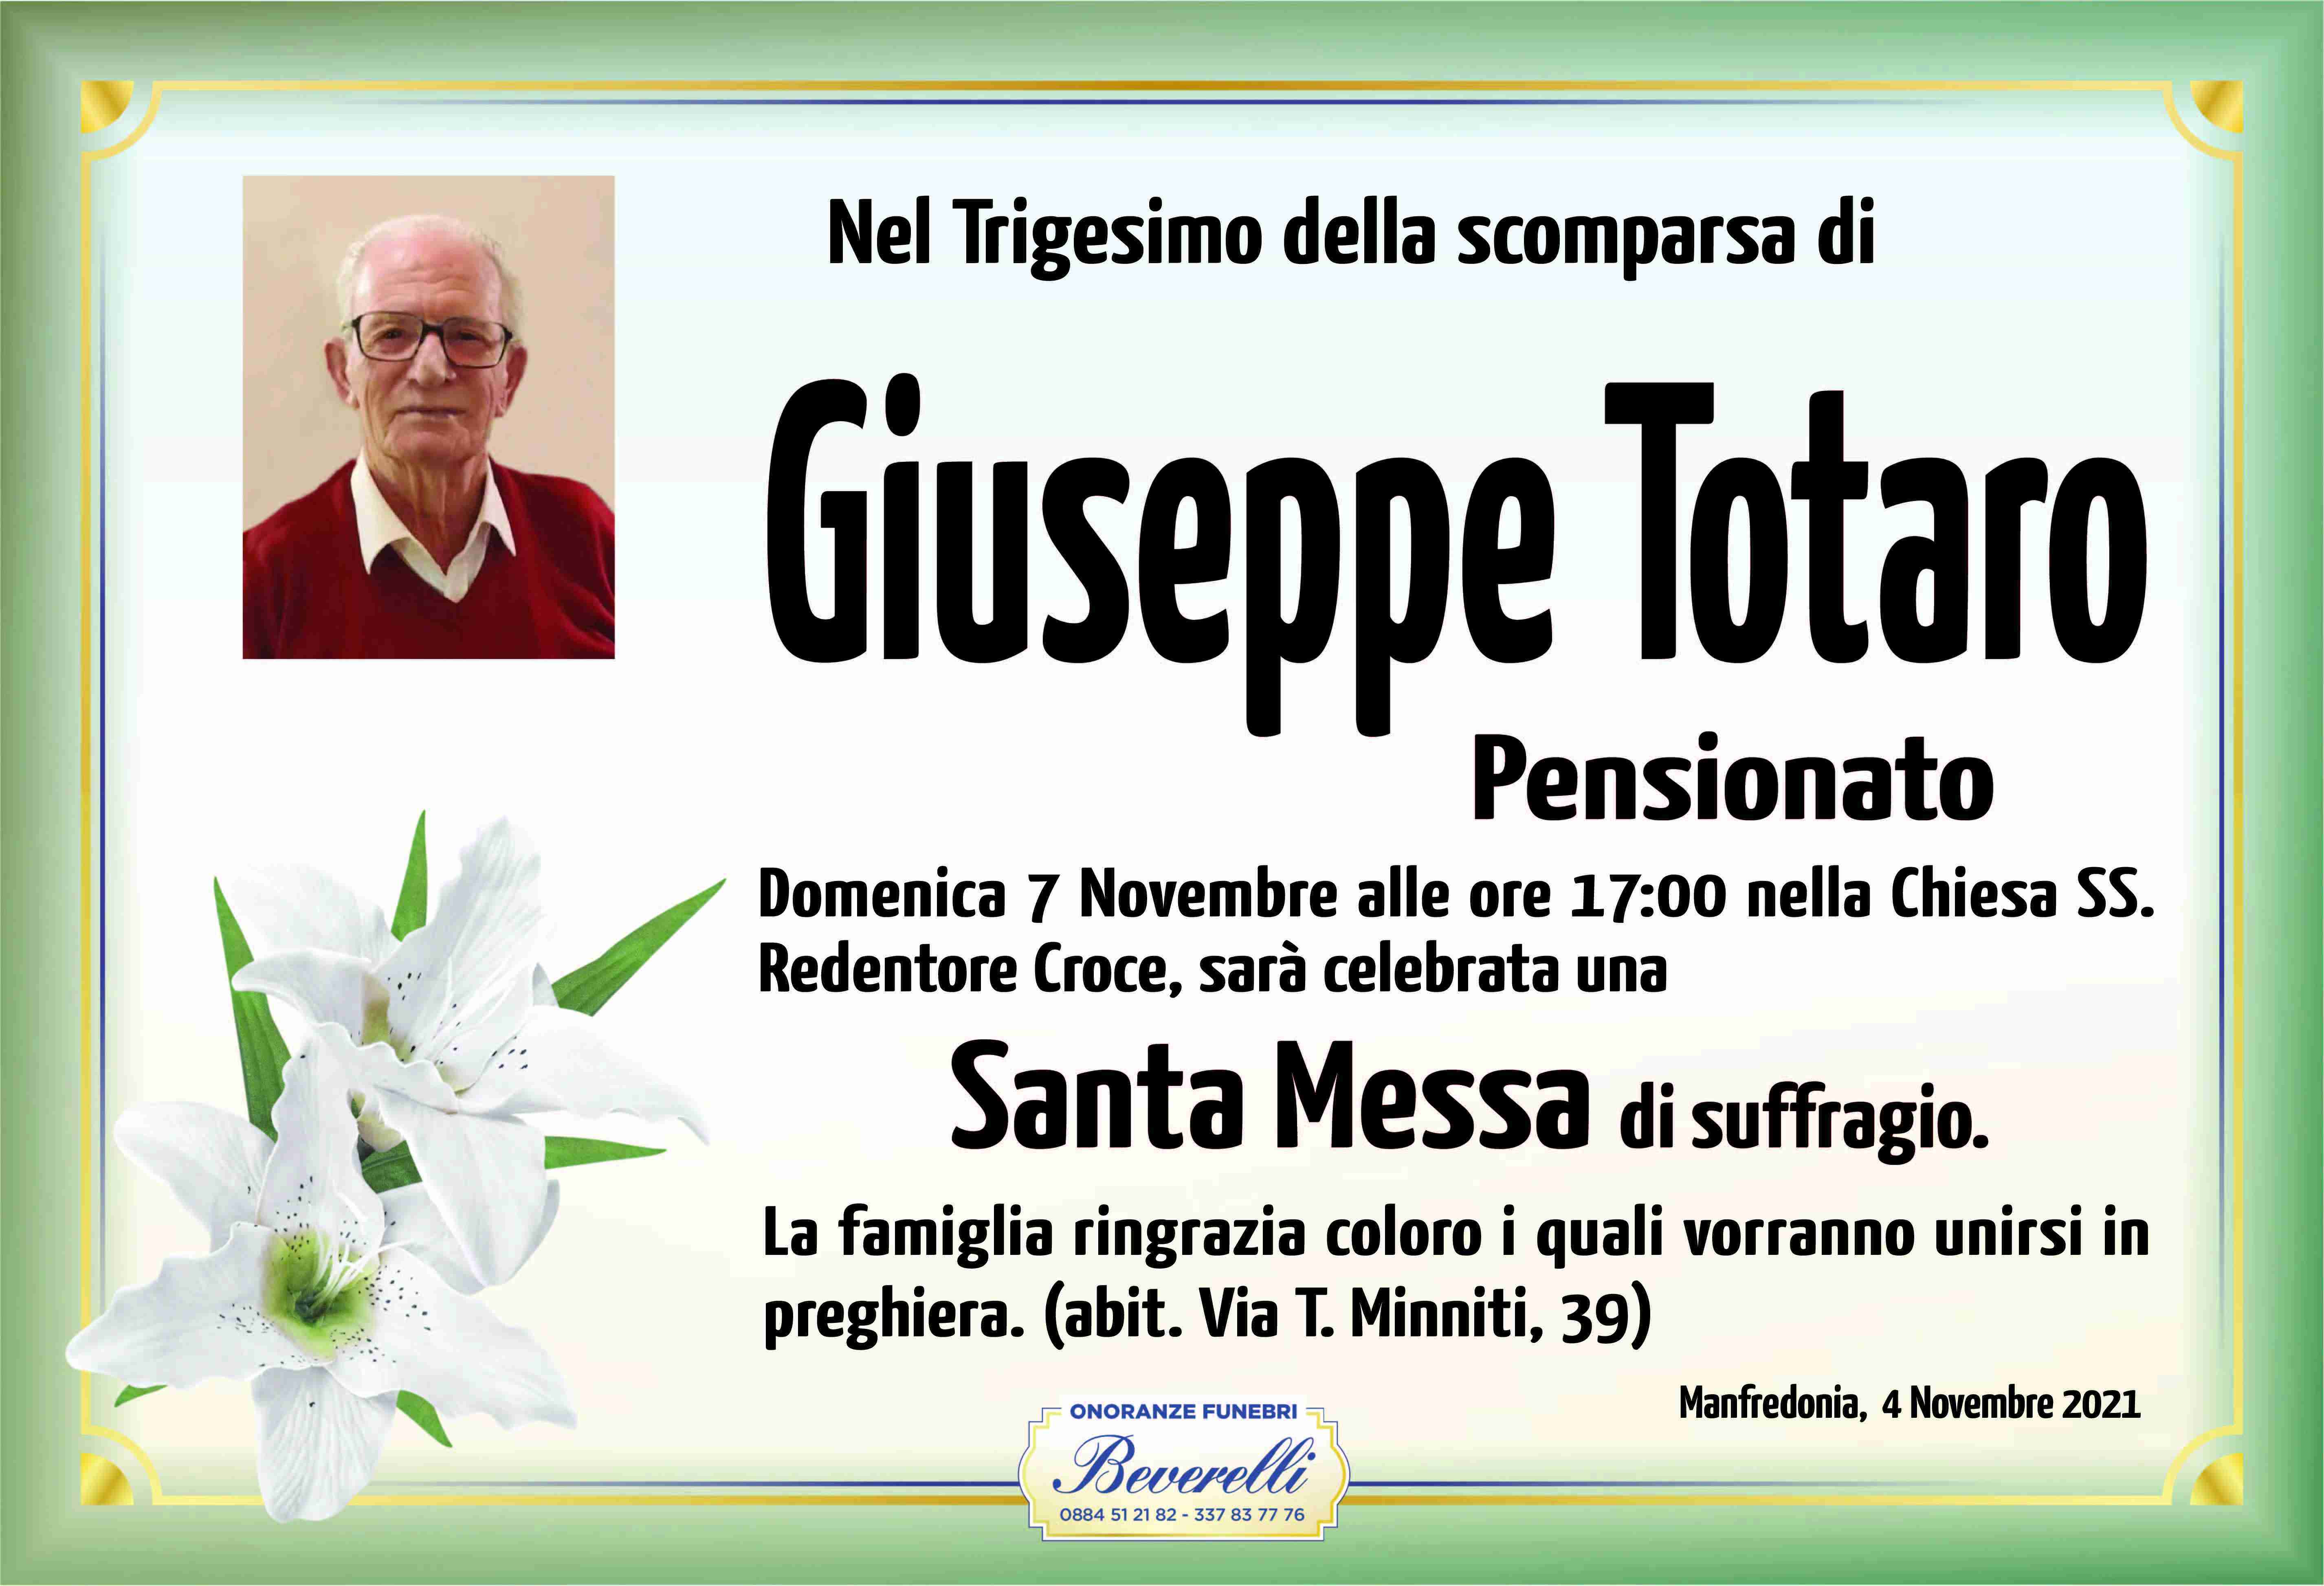 Giuseppe Totaro